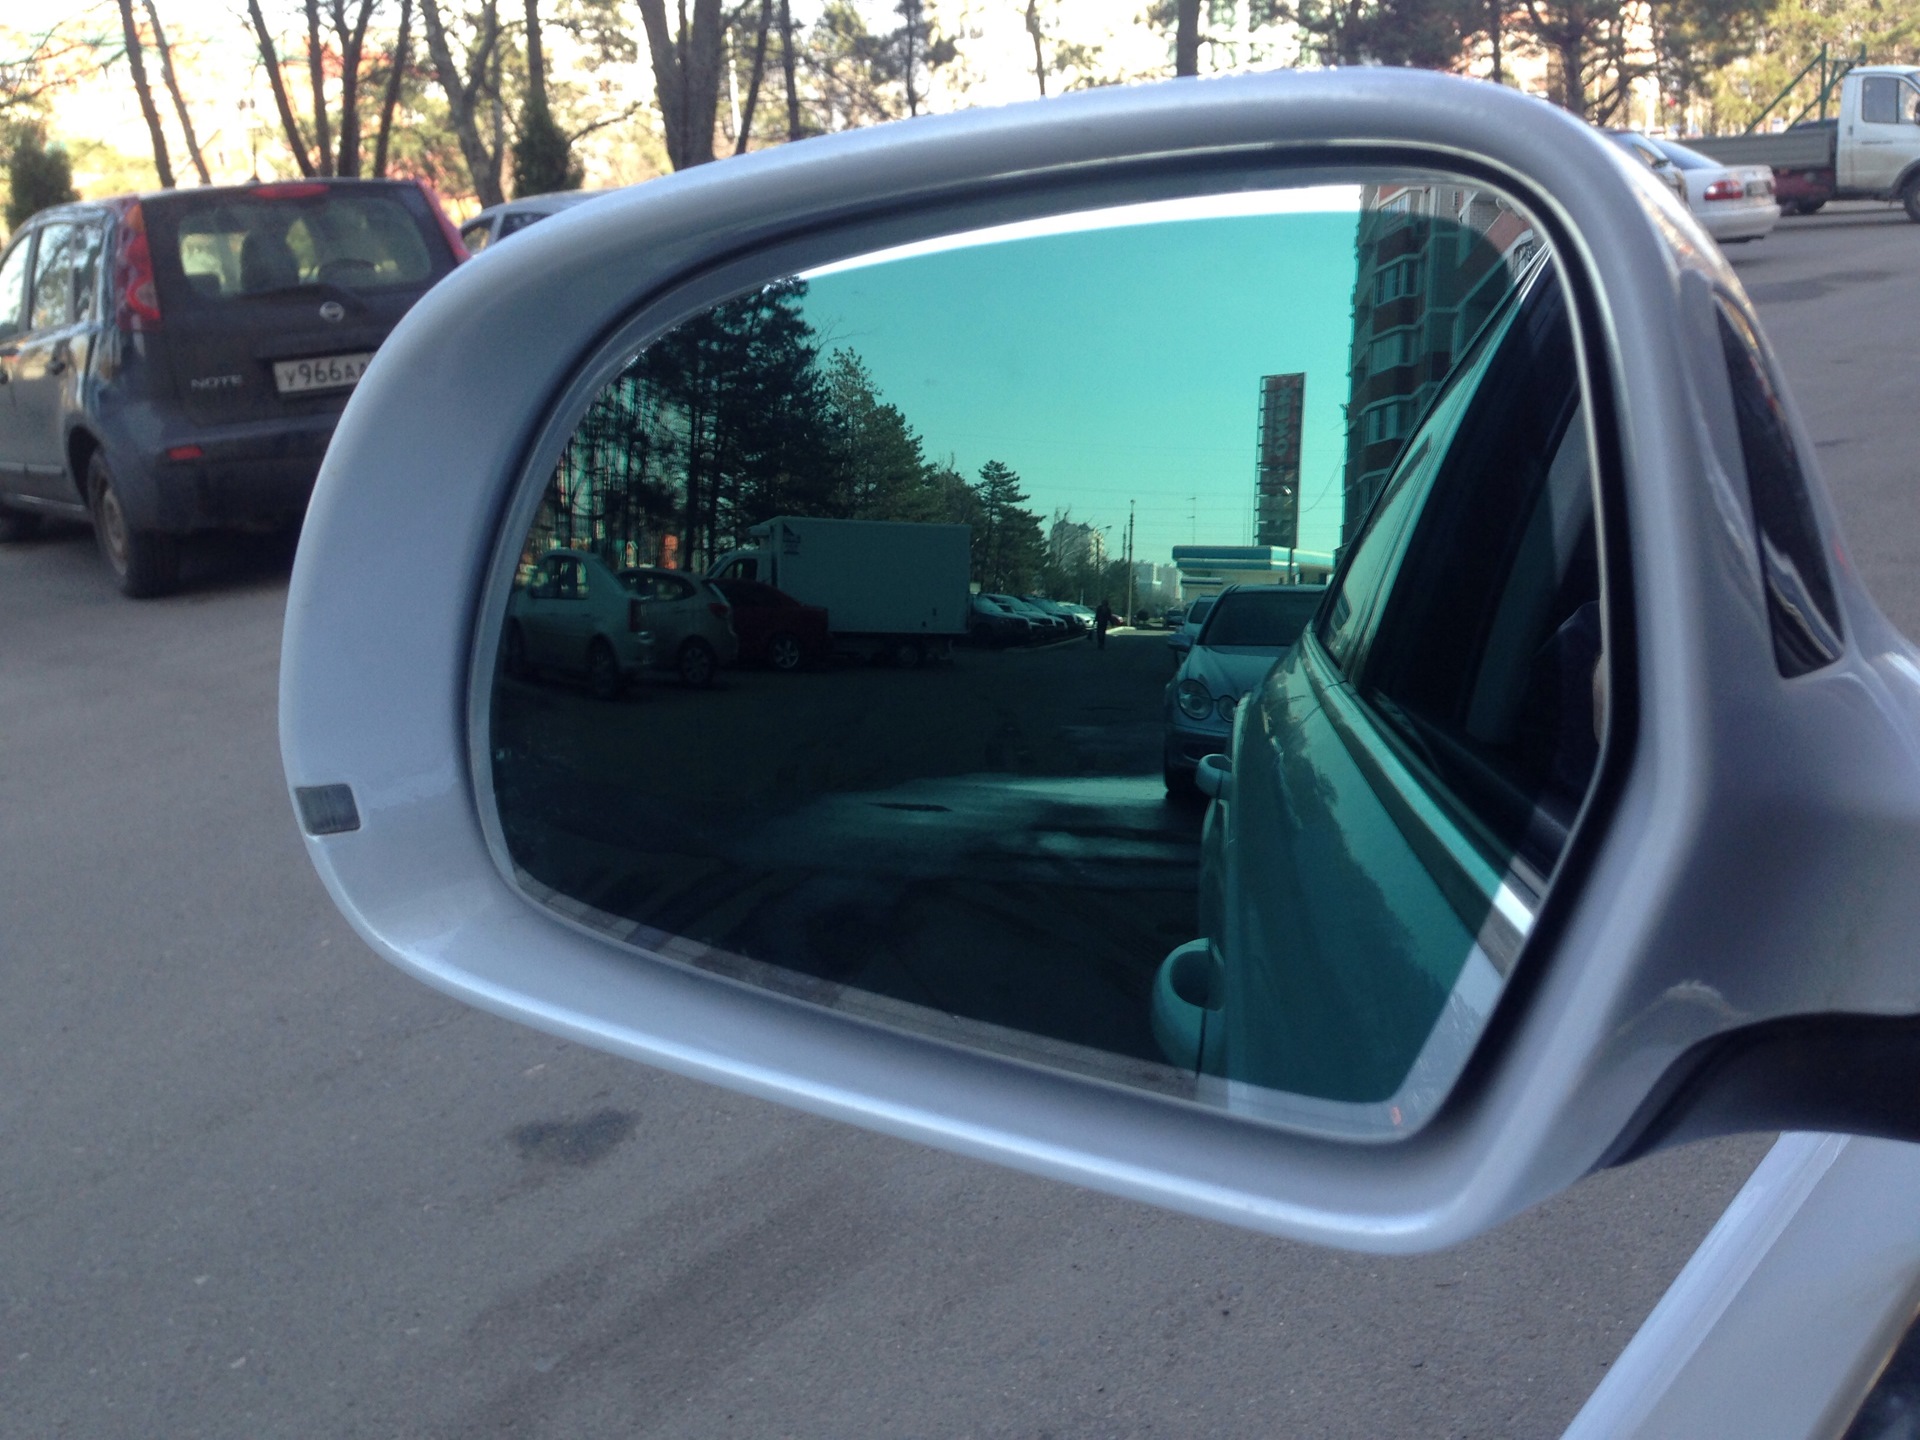 Автозатемнение зеркала заднего. Автозатемнение зеркала e53. Lexus jzs160 автозатемнение боковых зеркал. Затемнение заднего зеркала Авенсис 2. Тонировка боковых зеркал.